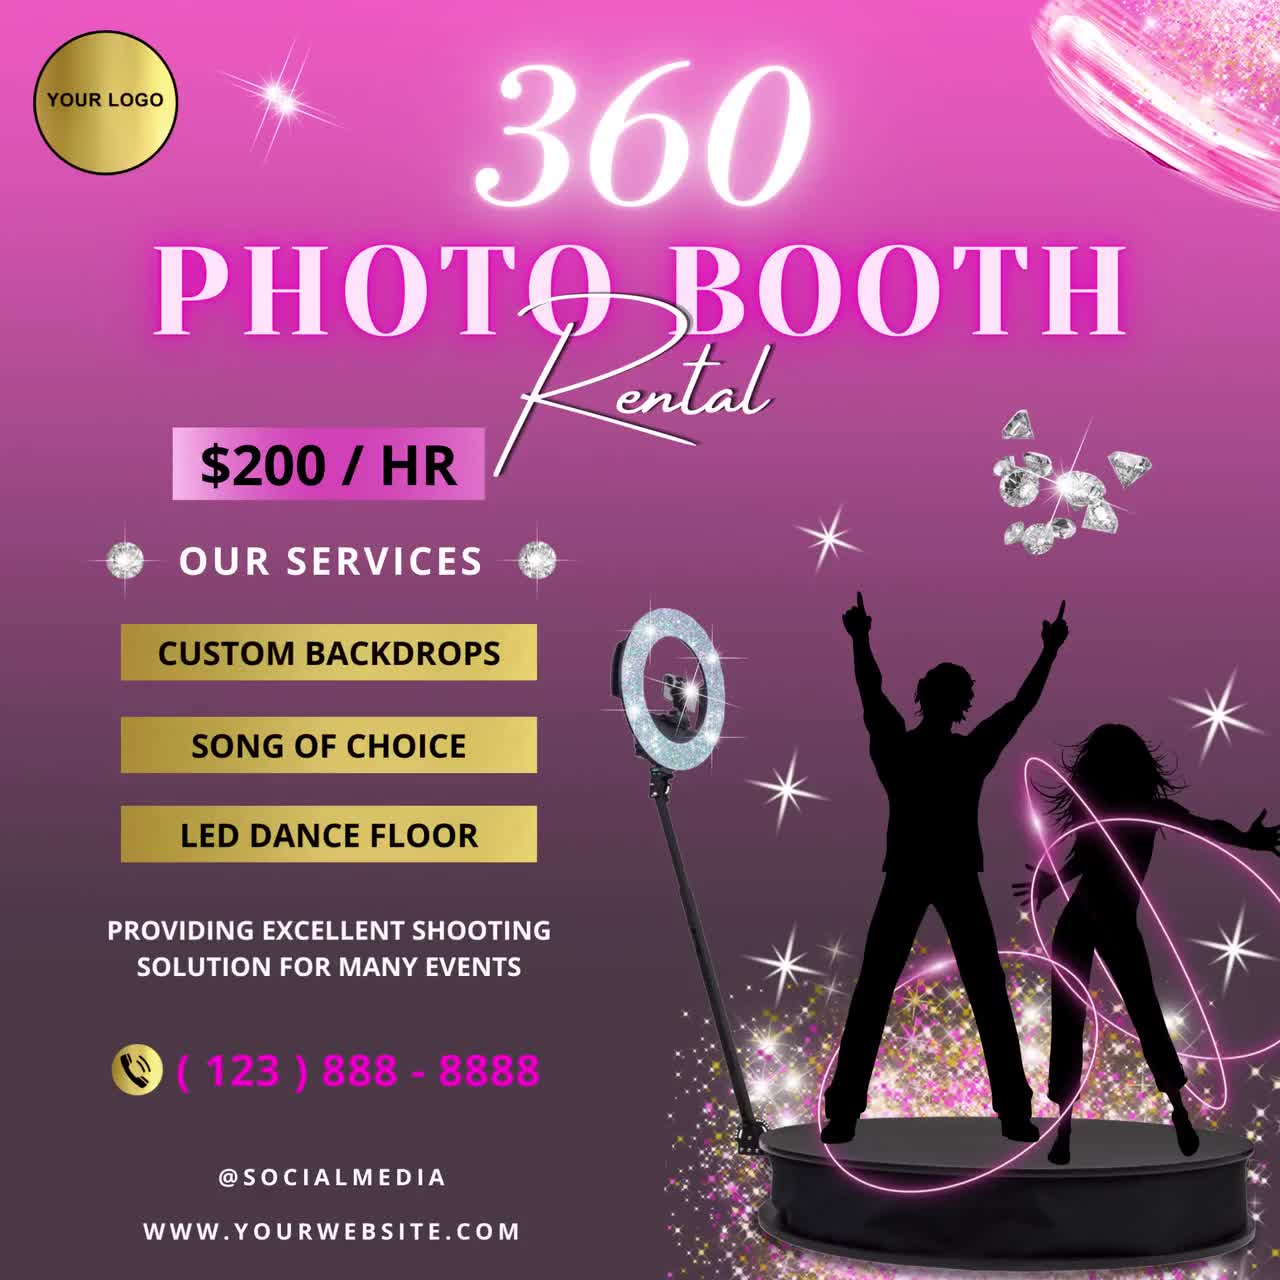 Souvenir Eventos - Photobooth & Videobooth 360 - Consulte